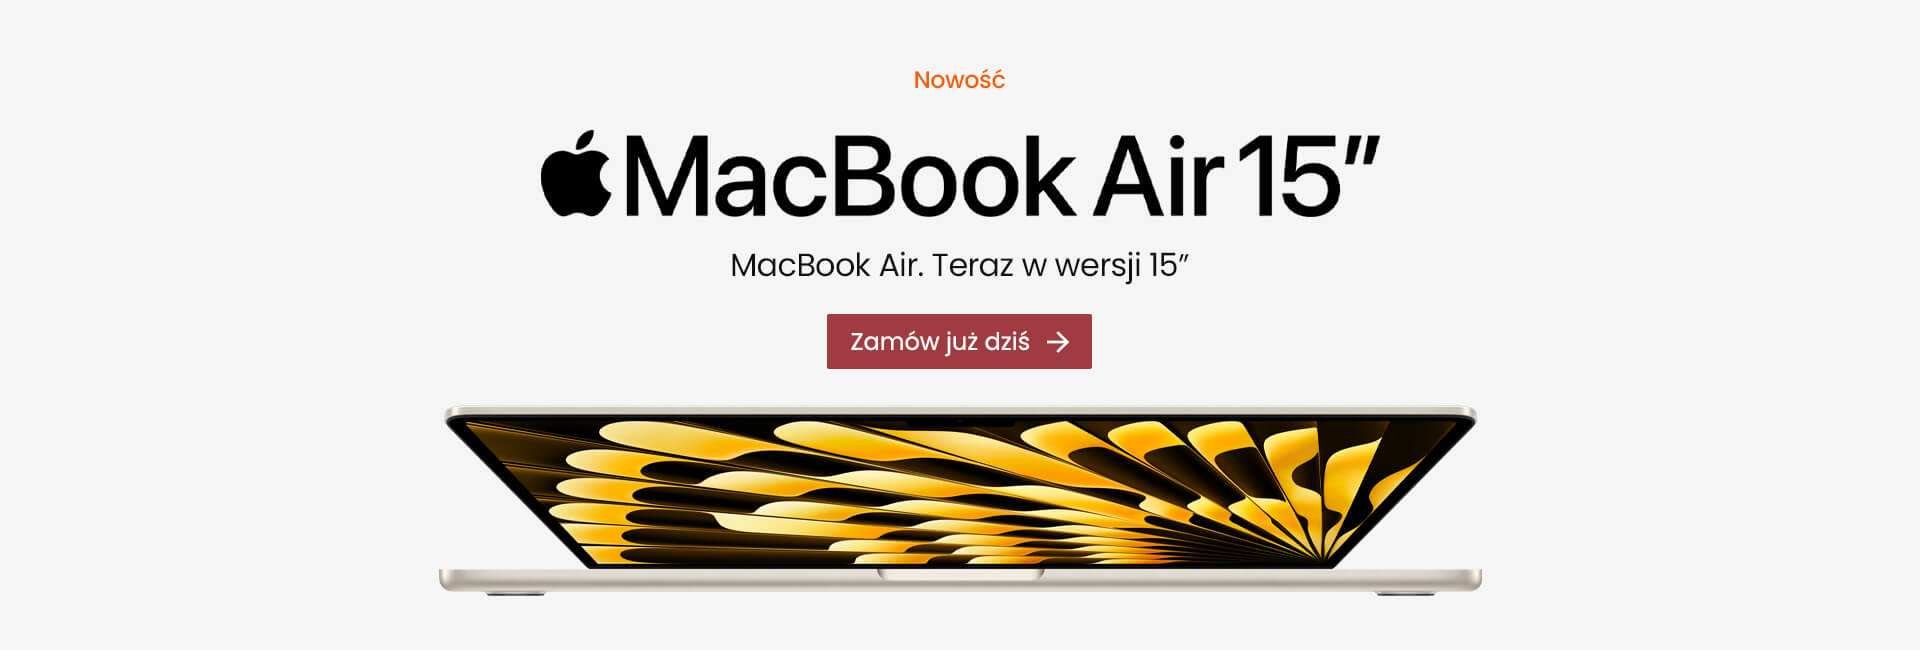 Nowy MacBook Air 15" - Kup teraz